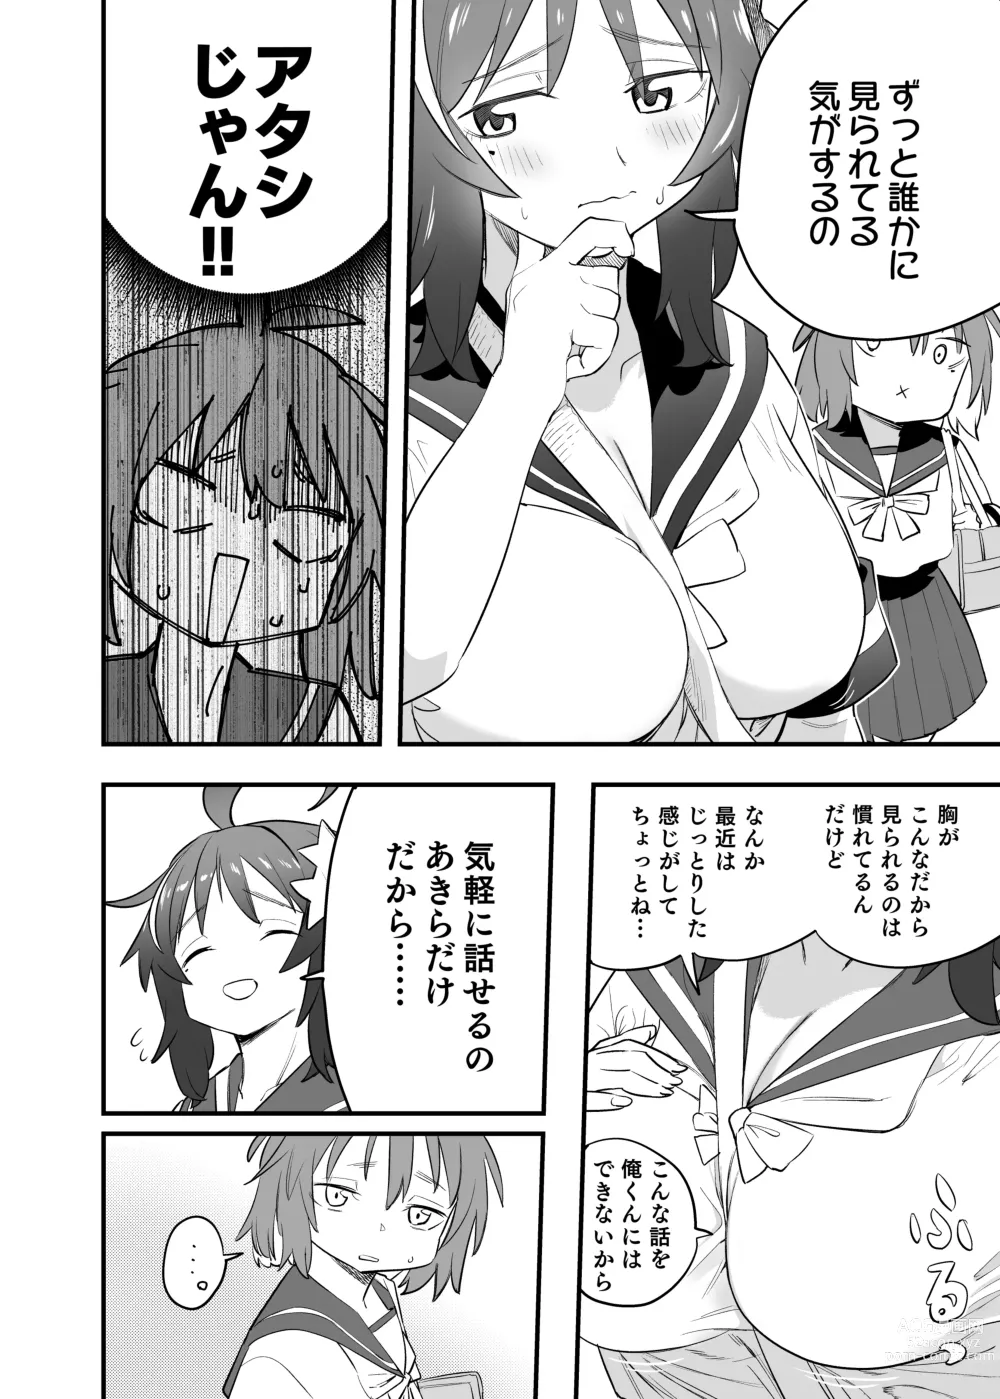 Page 46 of doujinshi Mokko-chan wa Chiisai kedo Okkii